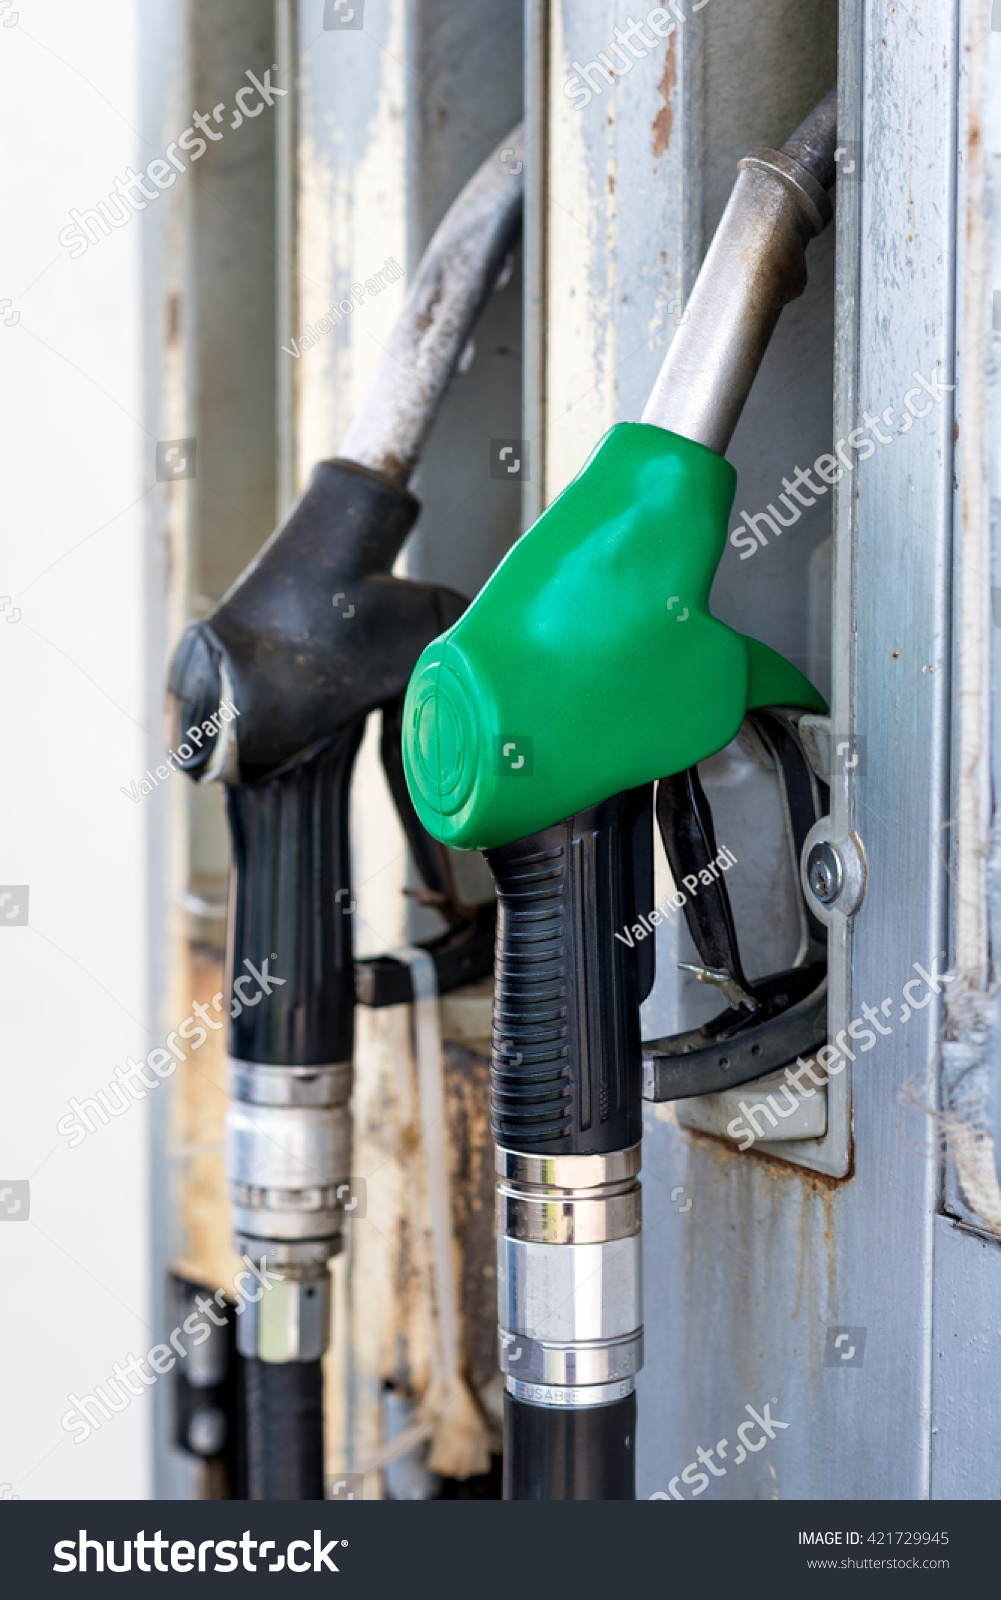 diesel fuel distributors